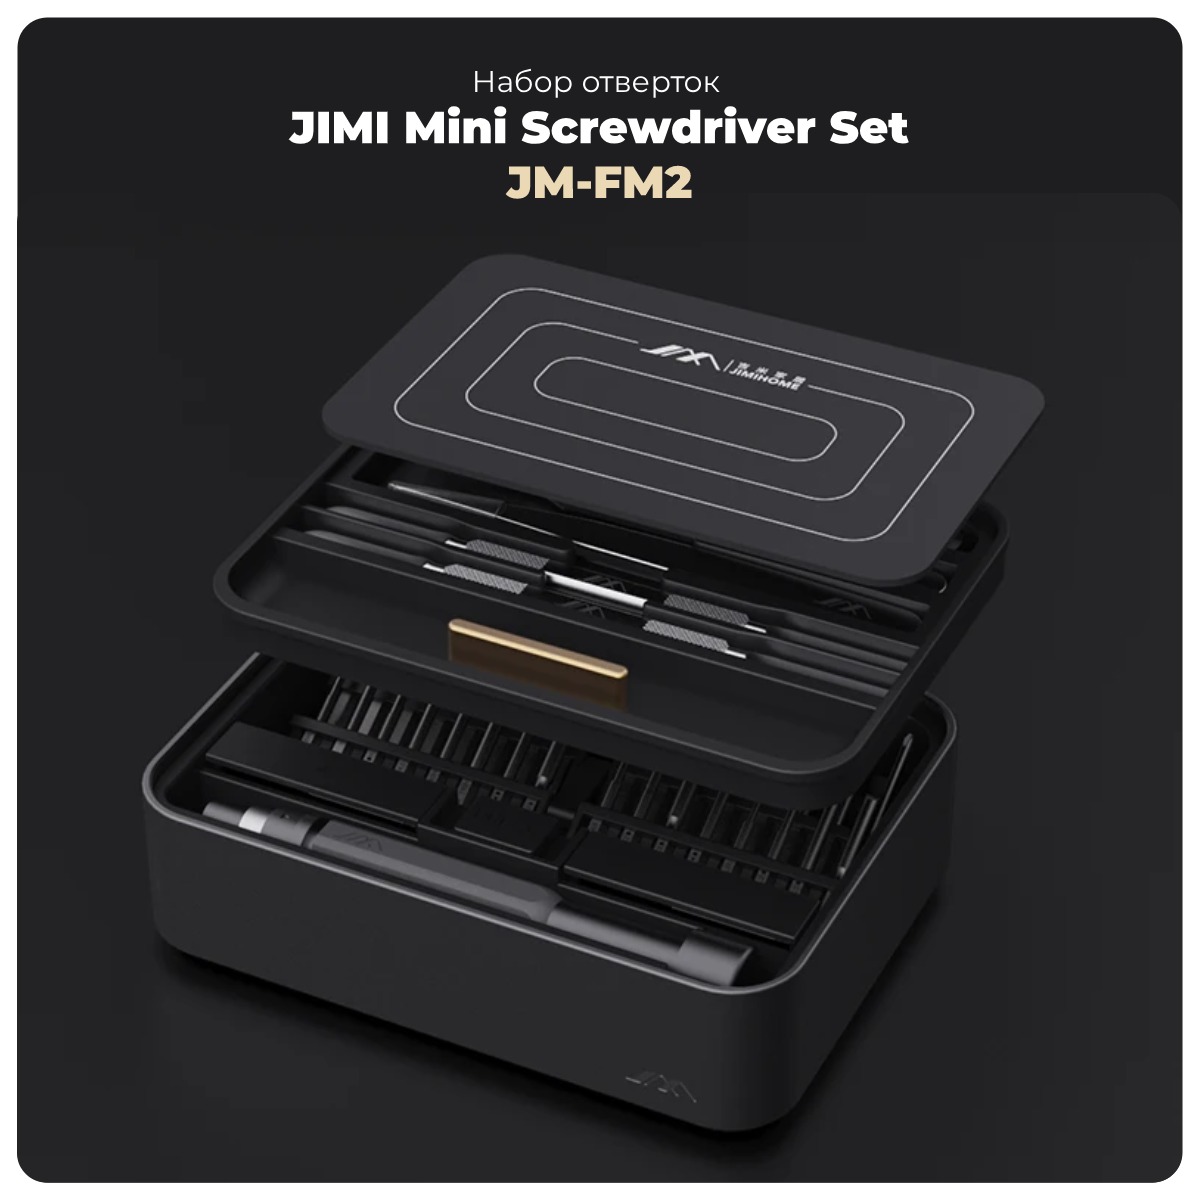 JIMI-Mini-Screwdriver-Set-JM-FM2-01